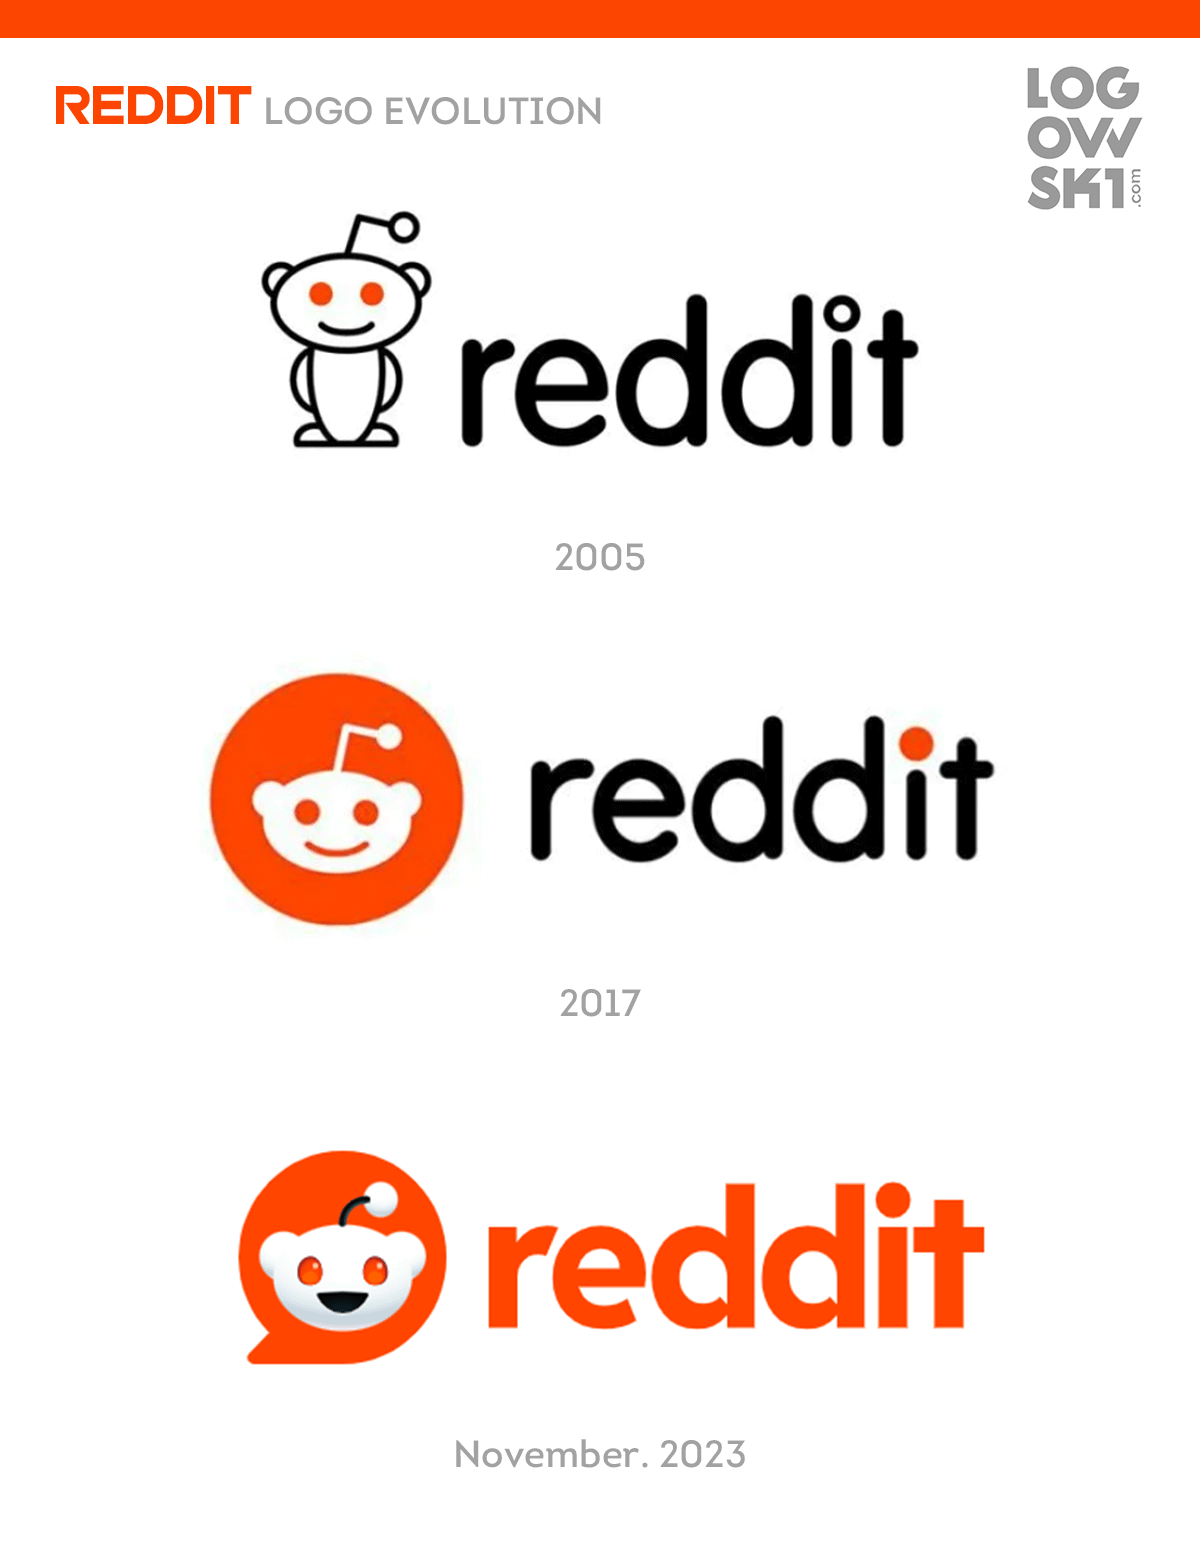 reddit-logo-evolution-full